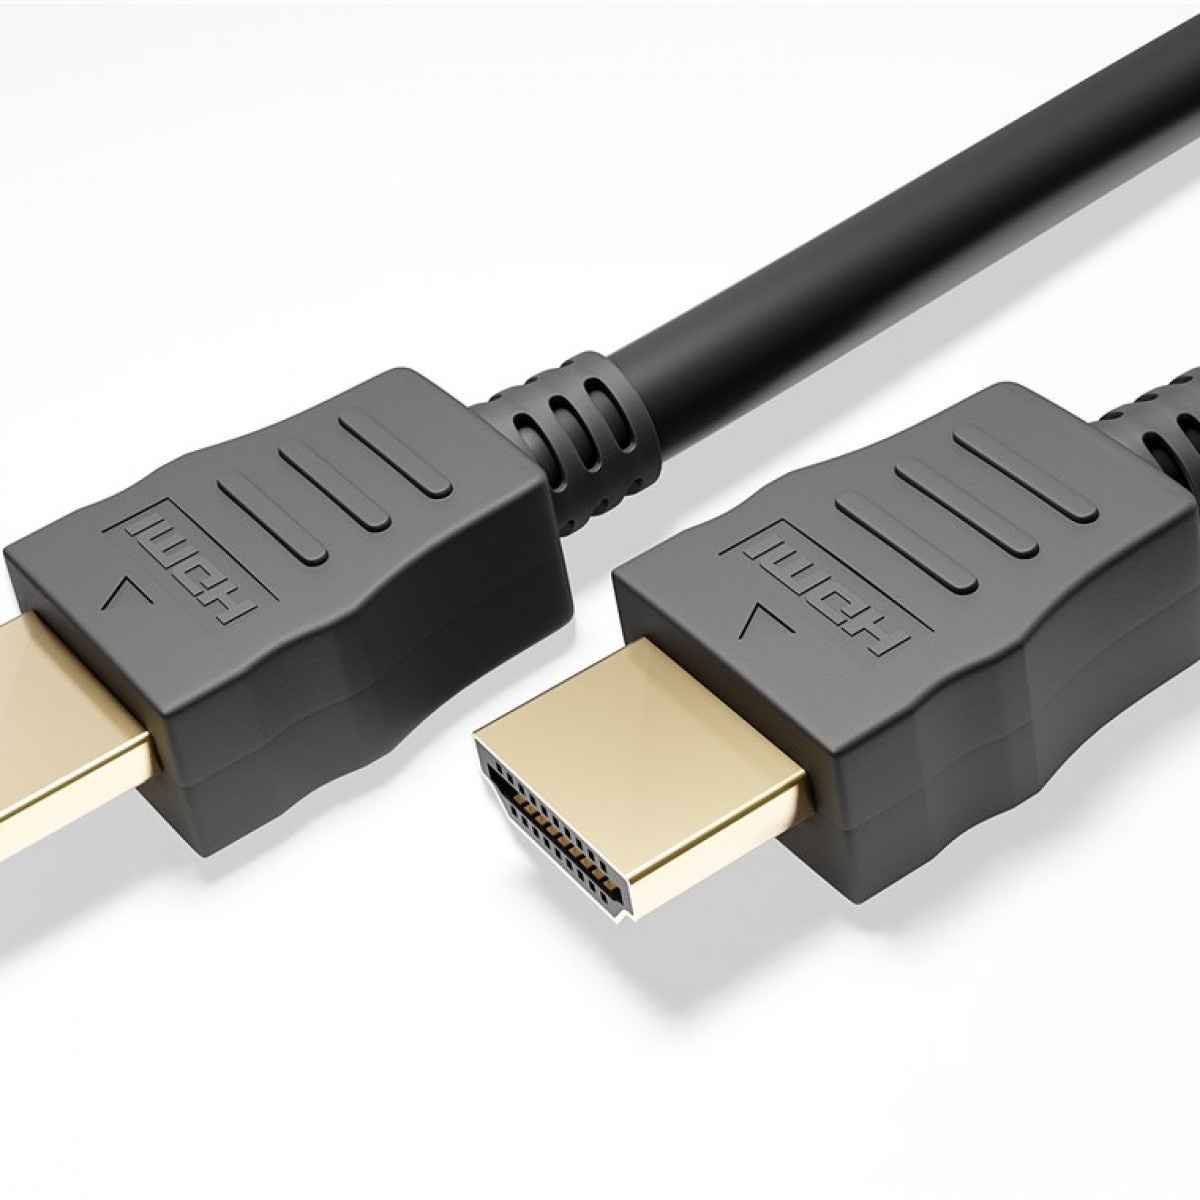 GOOBAY High-Speed-HDMI™-Kabel mit Ethernet Kabel HDMI